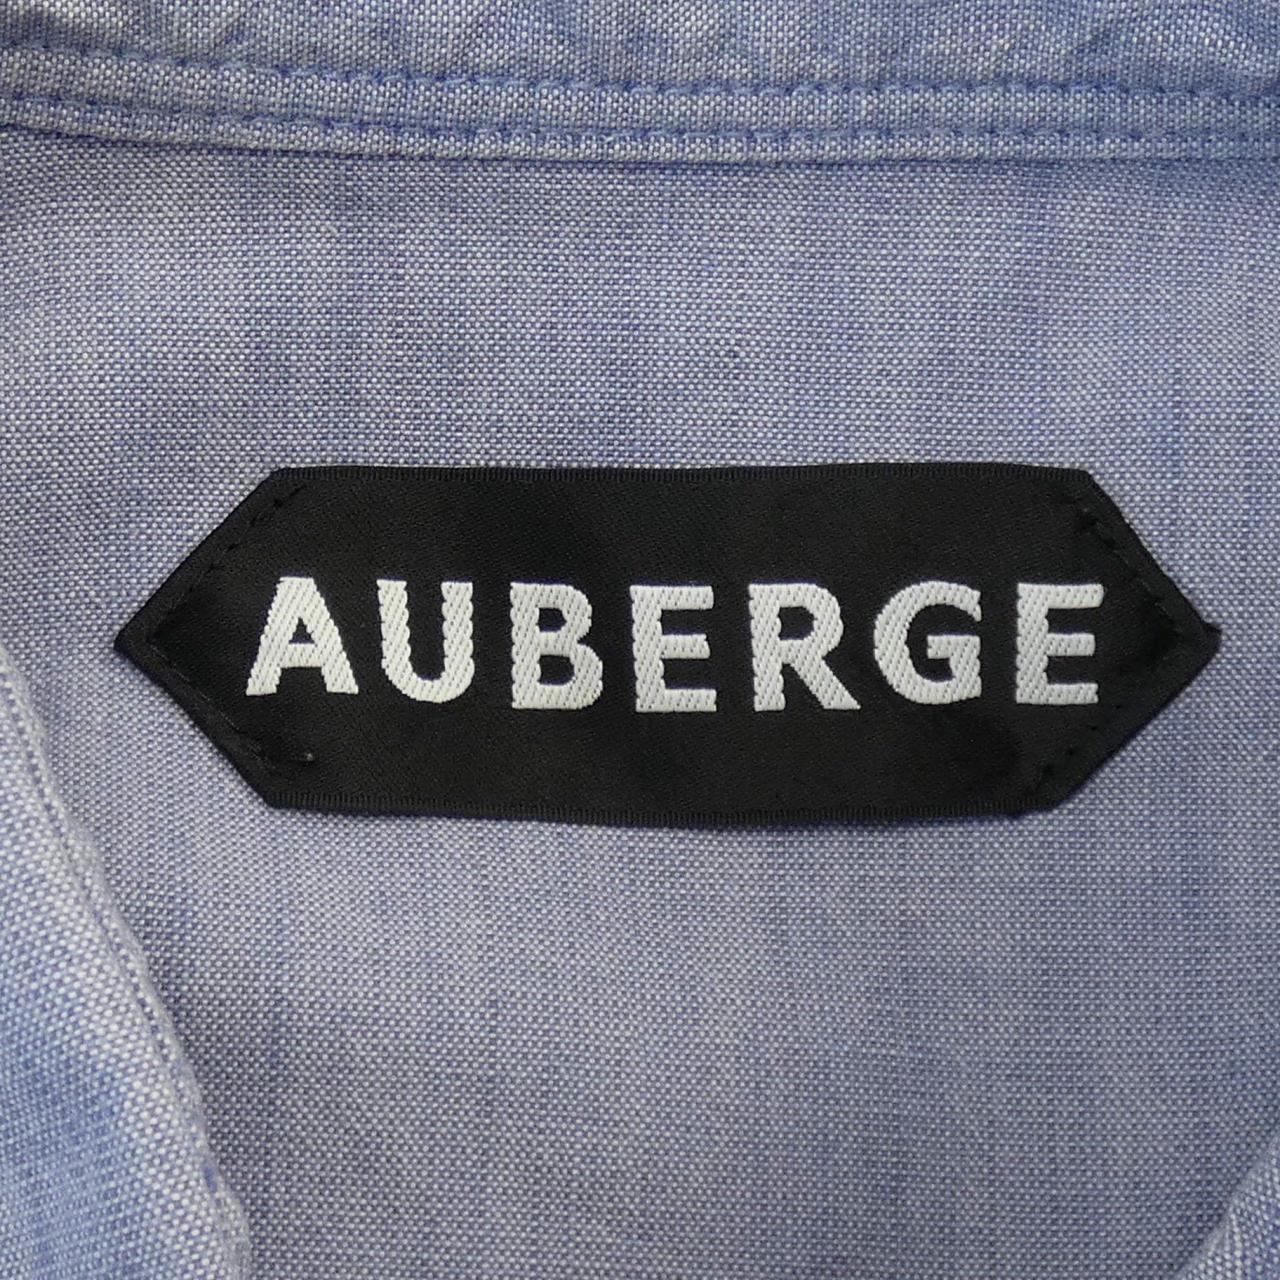 Auberge AUBERGE衬衫